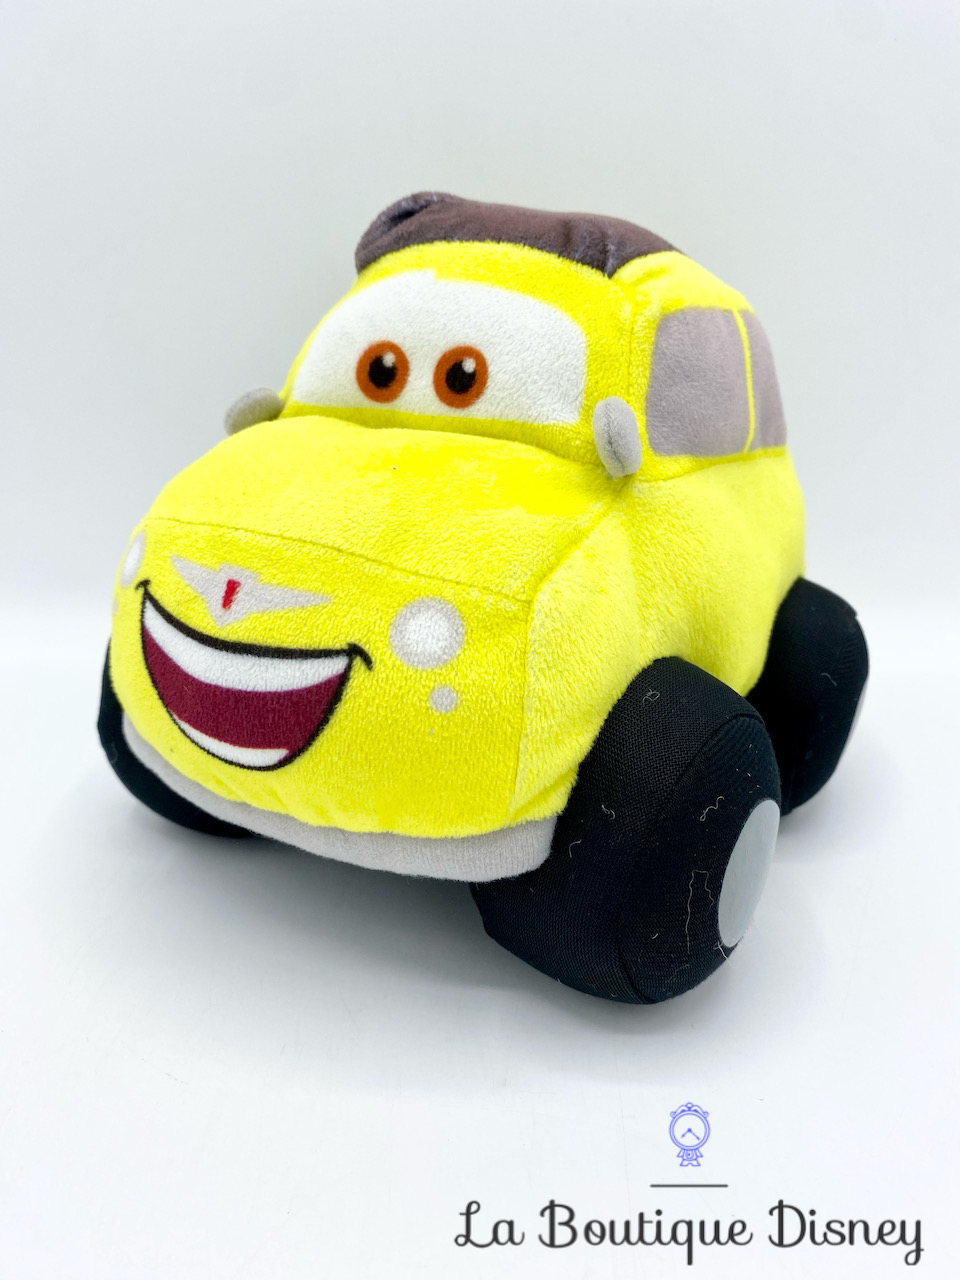 Peluche Luigi Cars Disney Pixar Nicotoy voiture jaune italienne 18 cm